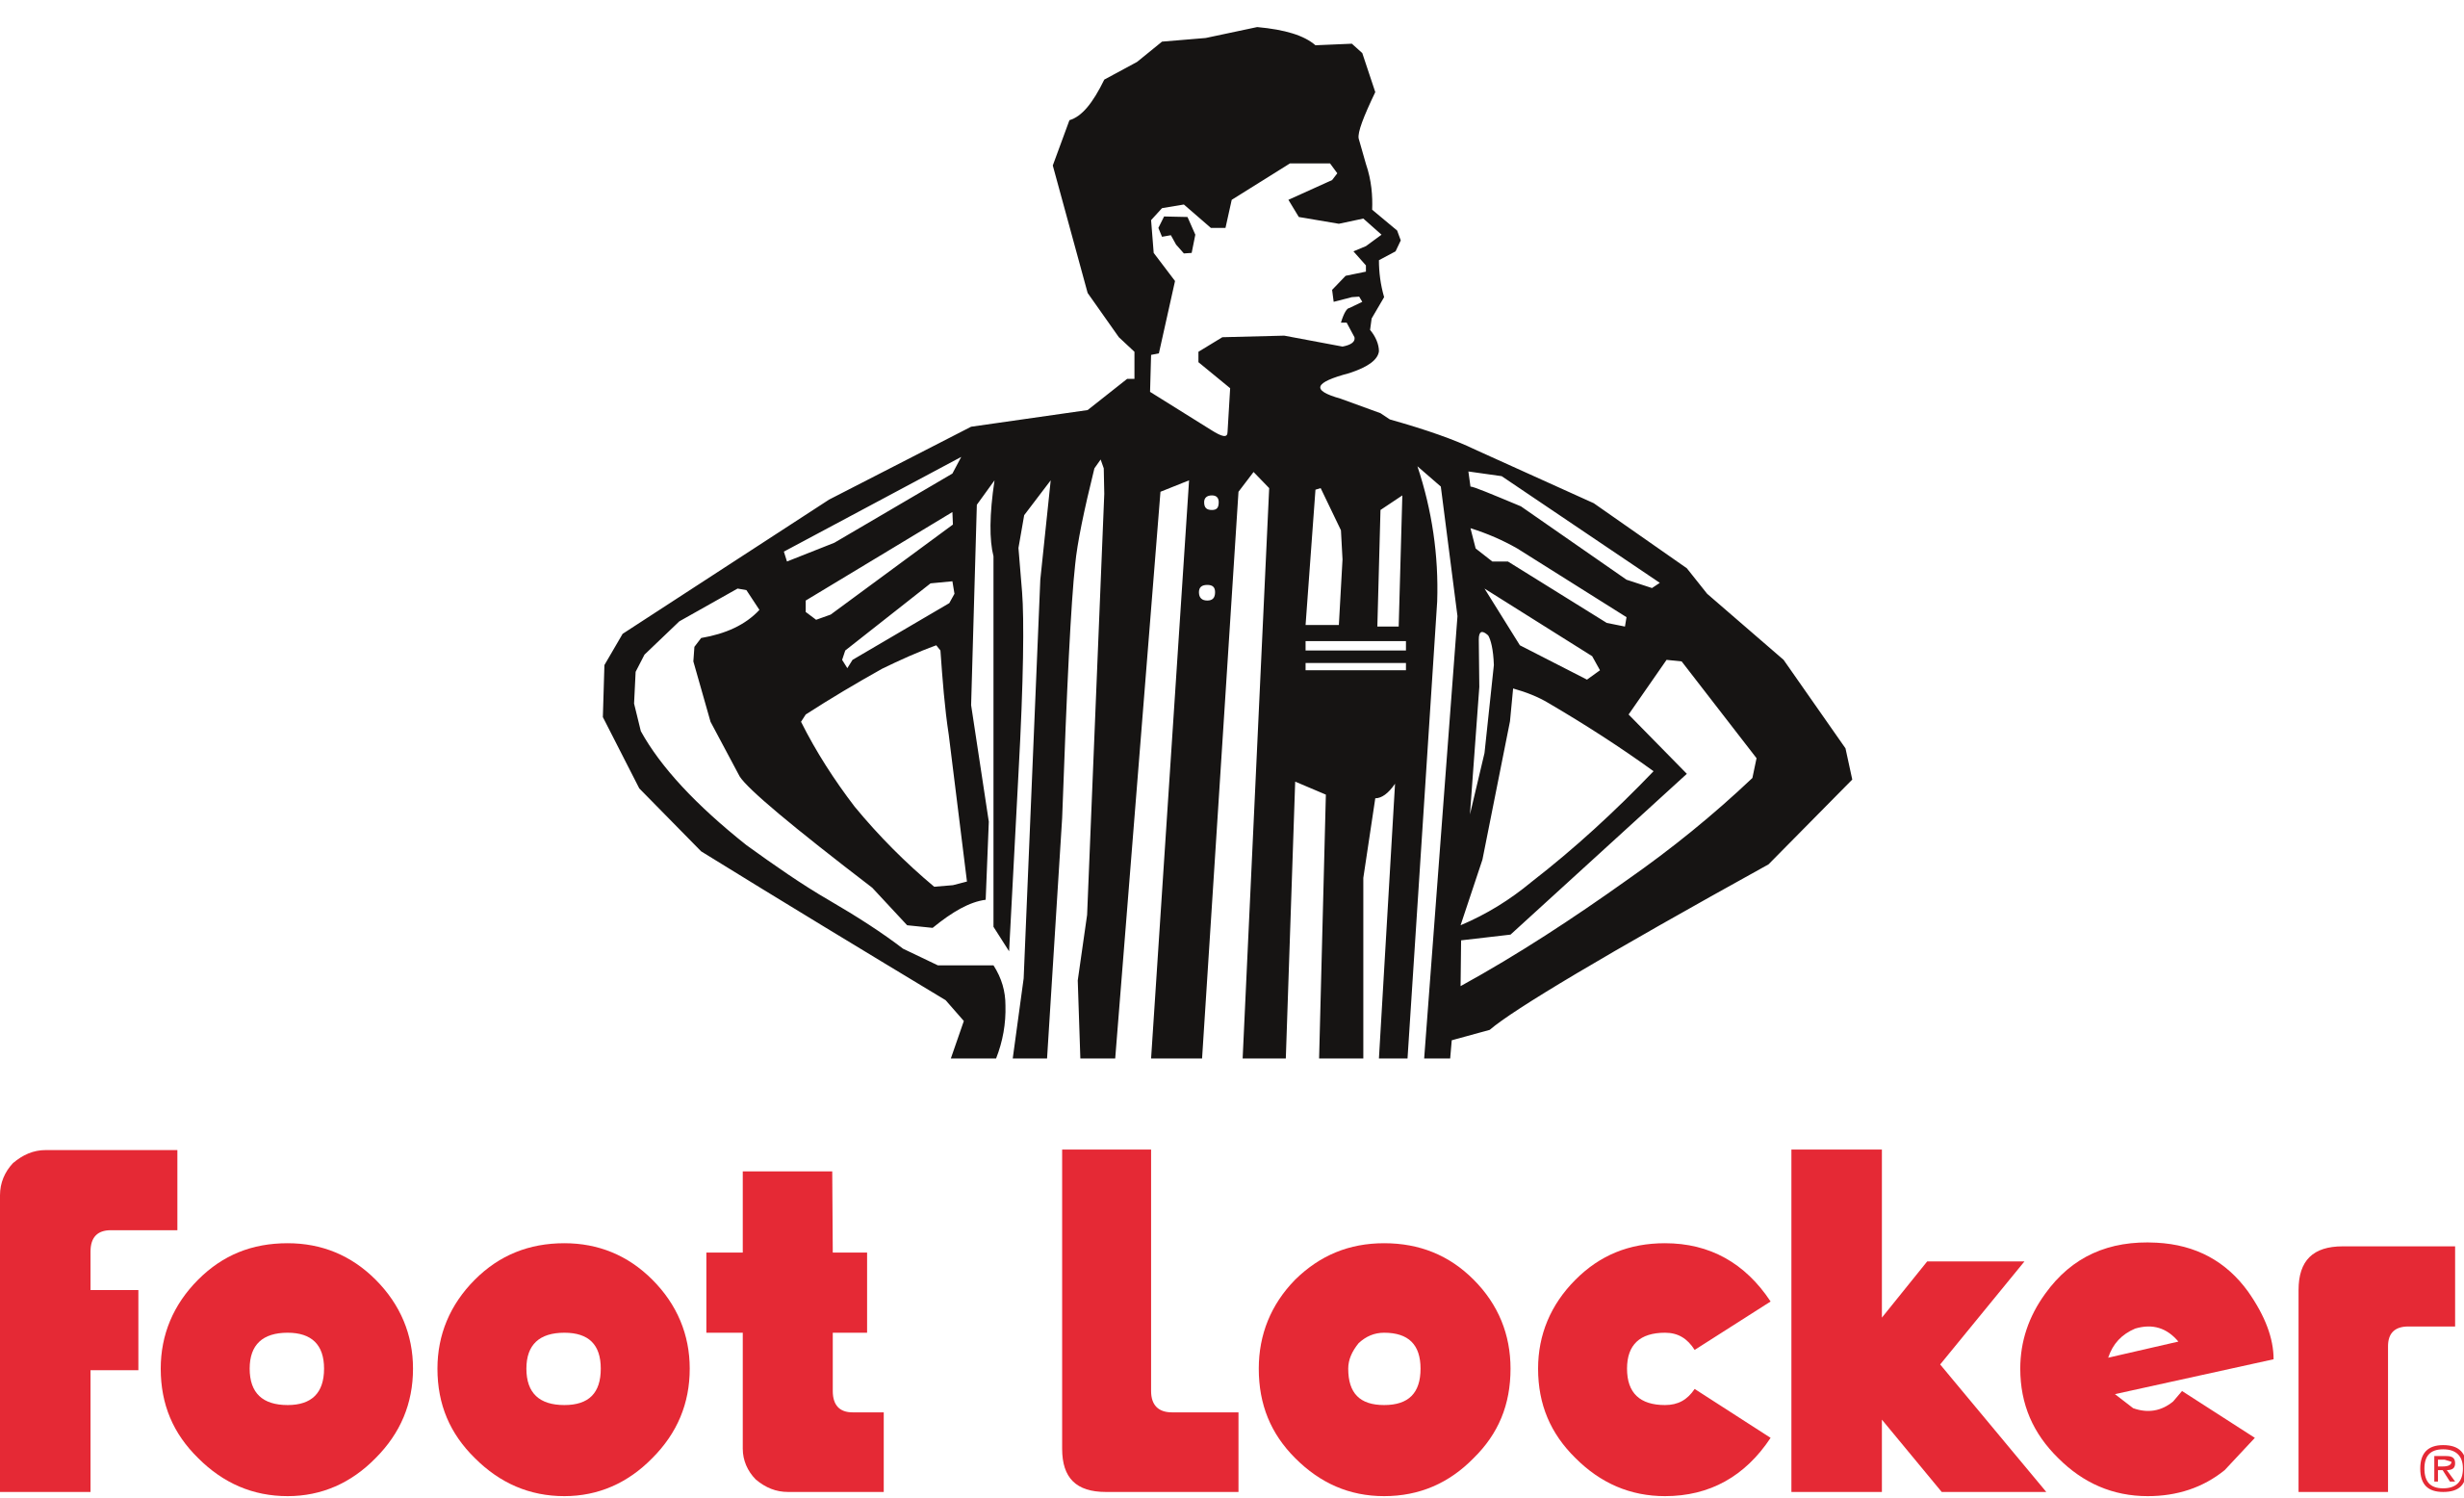 Foot Locker logo.svg